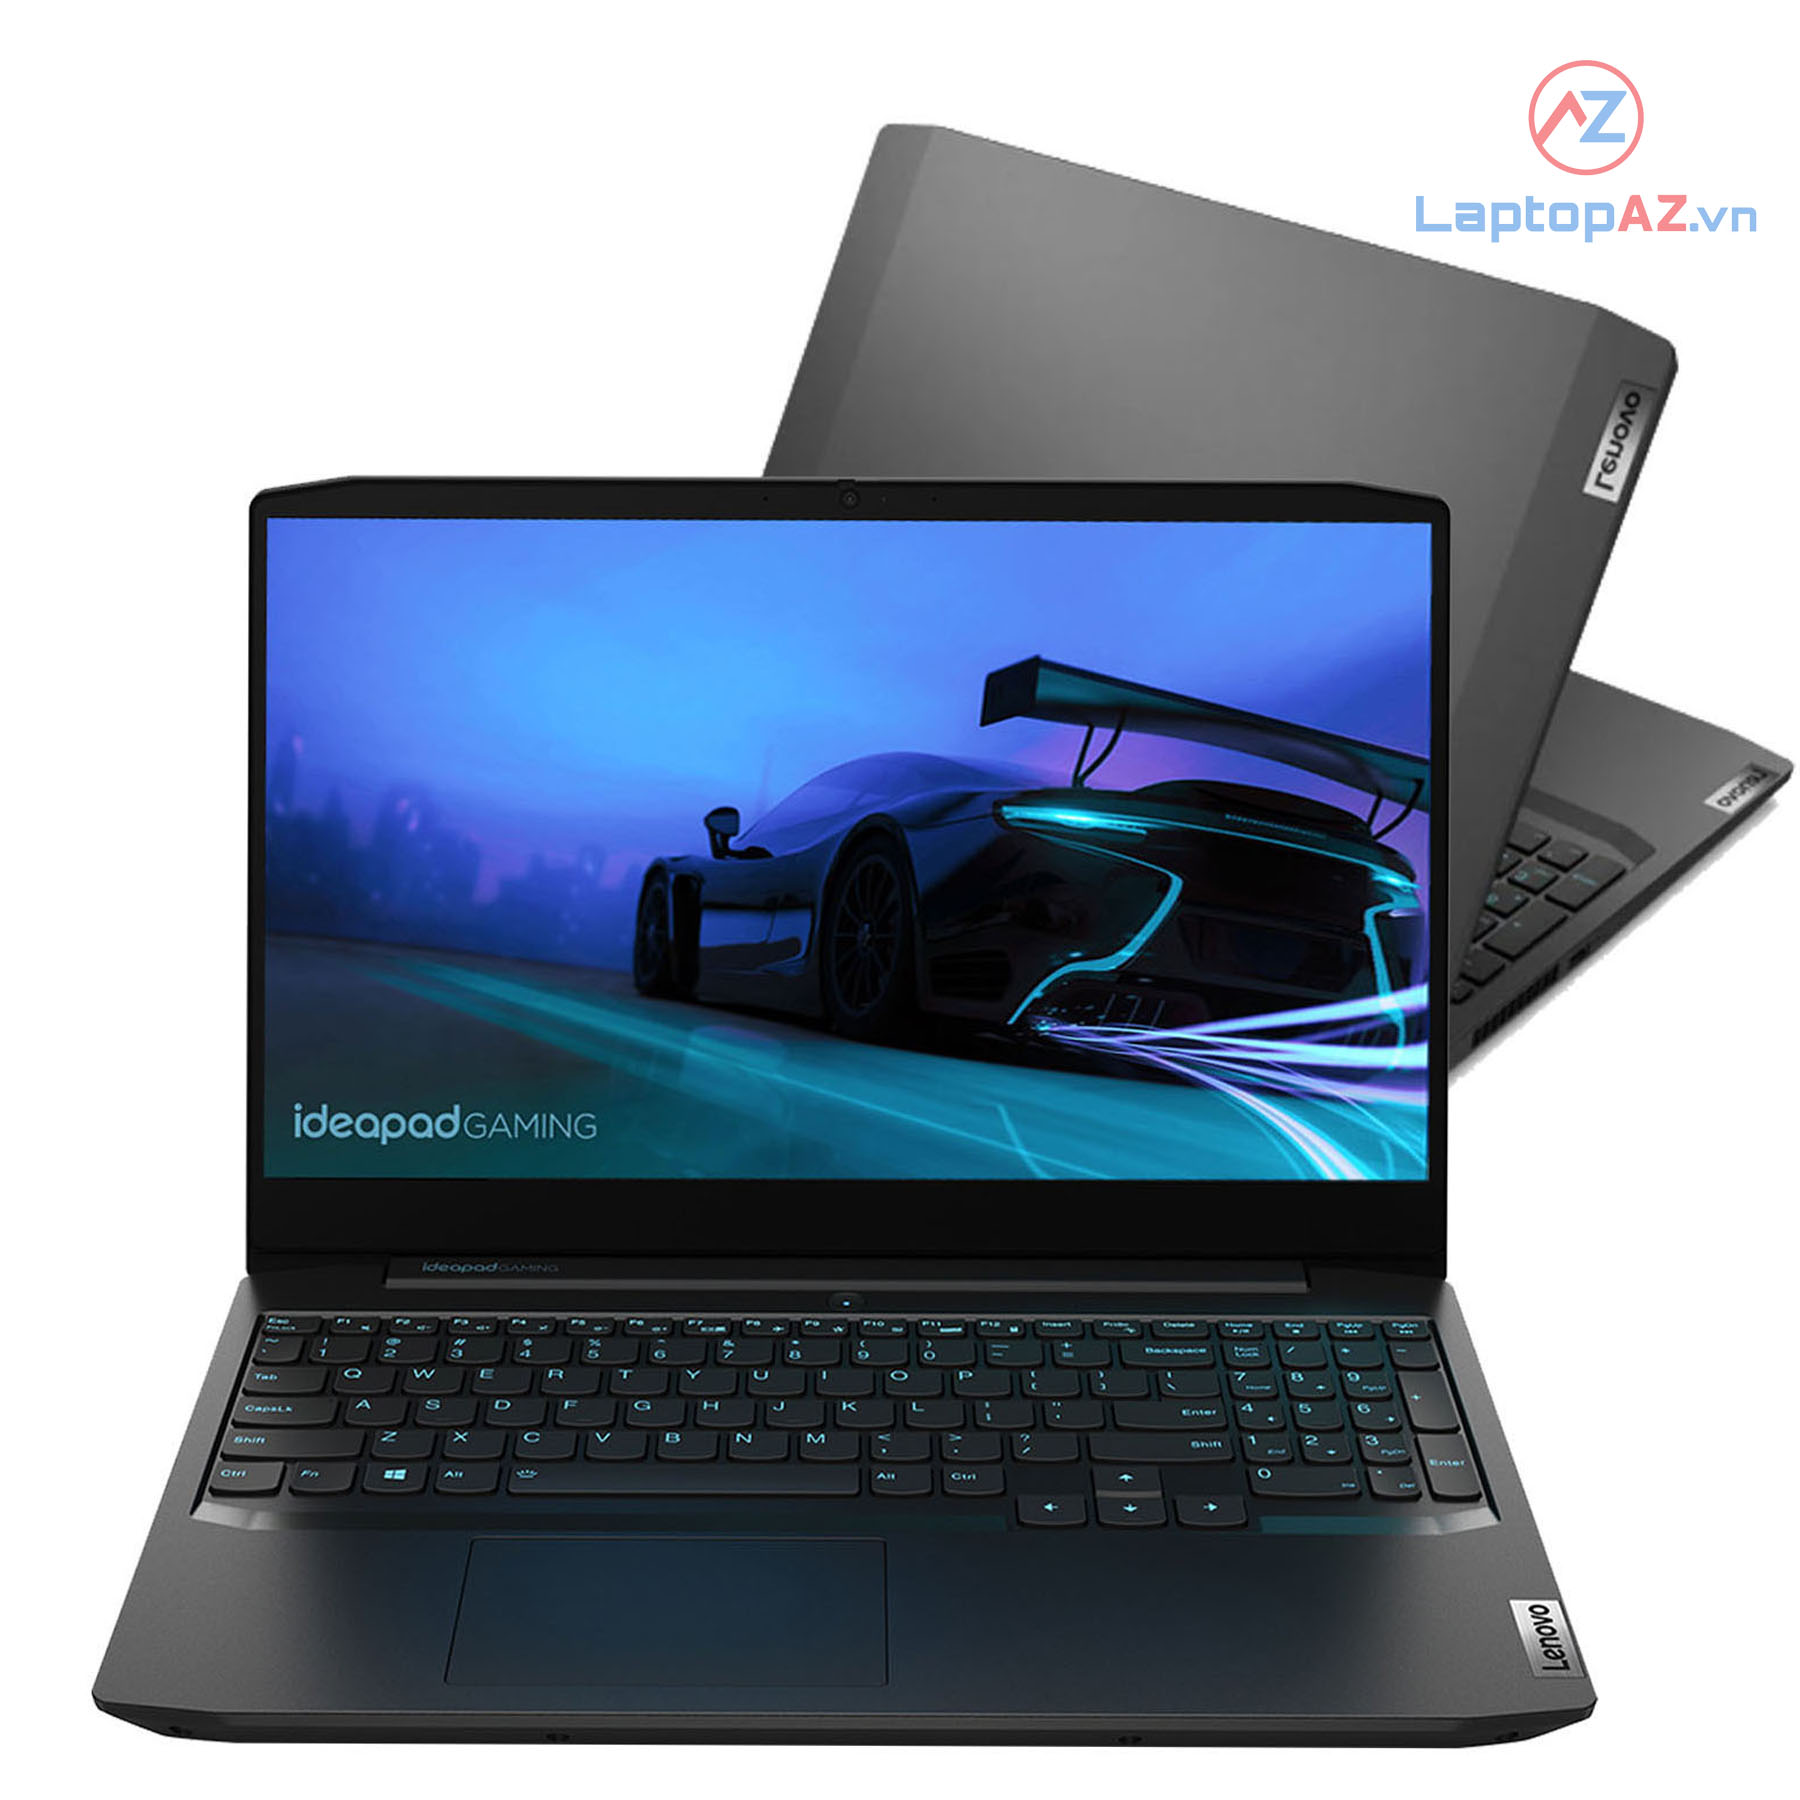 Bán Laptop Lenovo Ideapad Gaming 3 15ARH05 Ryzen 5 giá tốt nhất thị trường